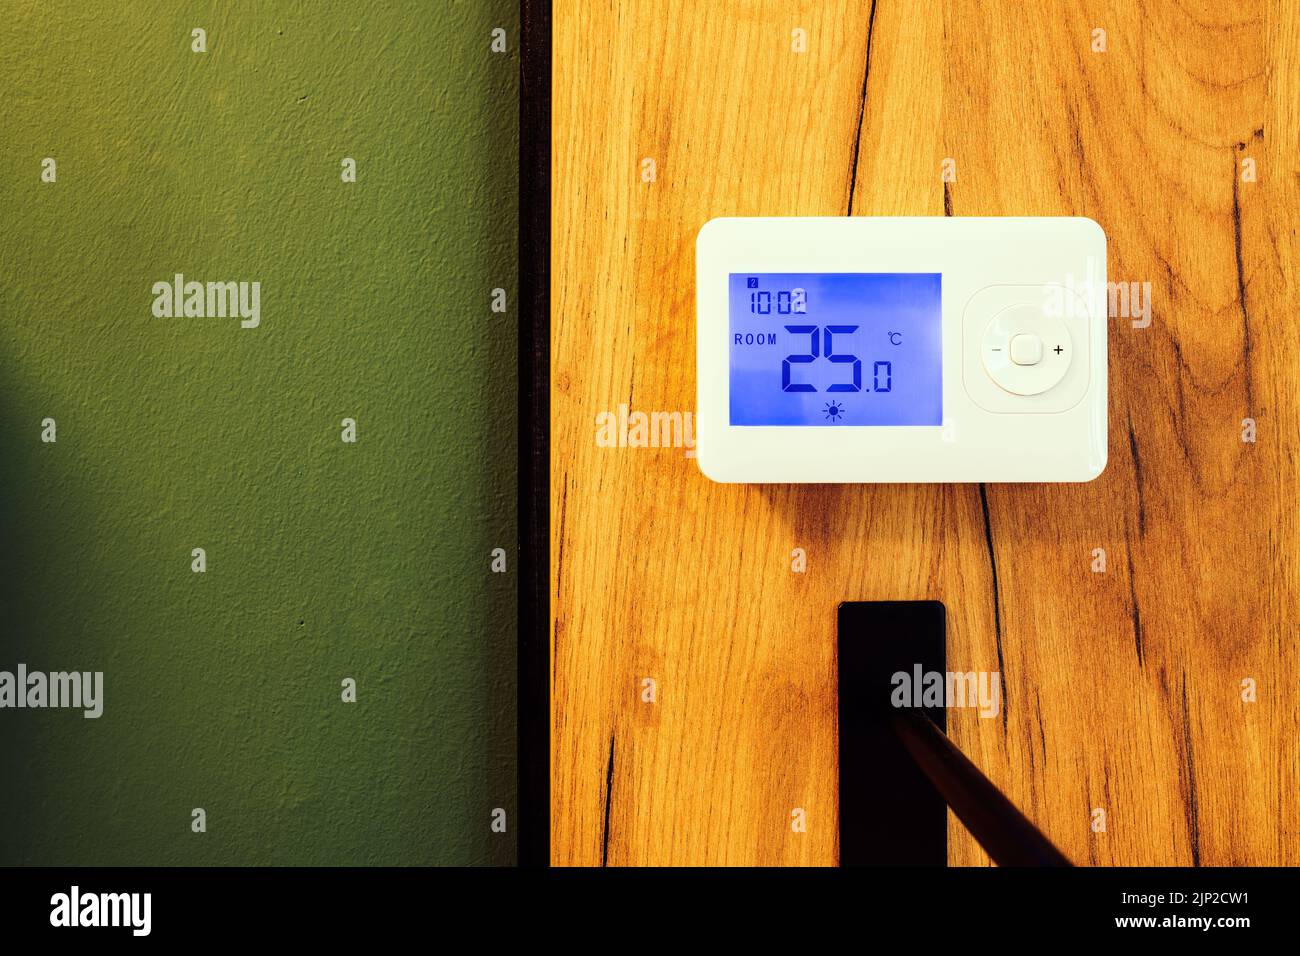 Unidad de control del sistema de termostato de calefacción doméstica con pantalla lcd Foto de stock